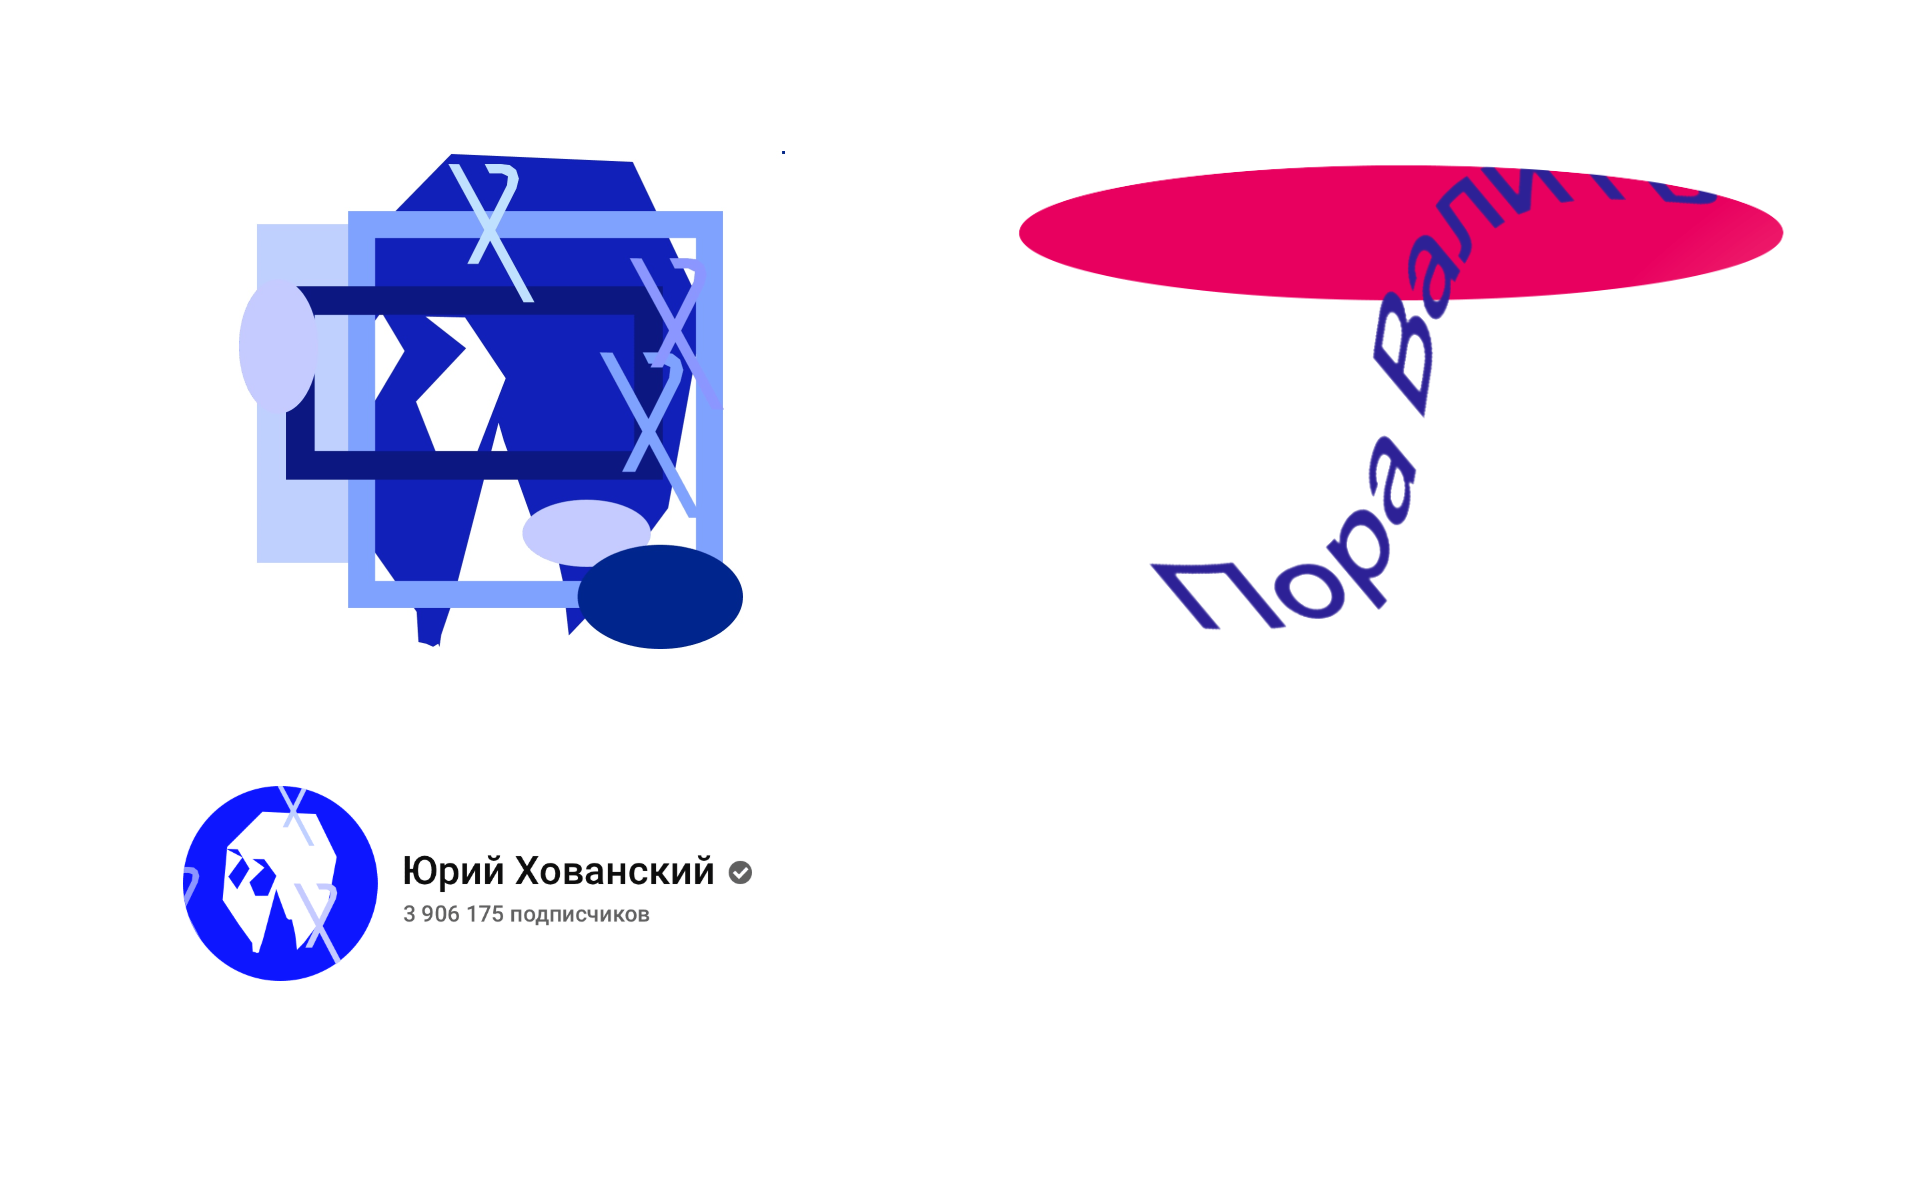 Логотипы для Руслана Усачева и Юрия Хованского от студии Артемия Лебедева